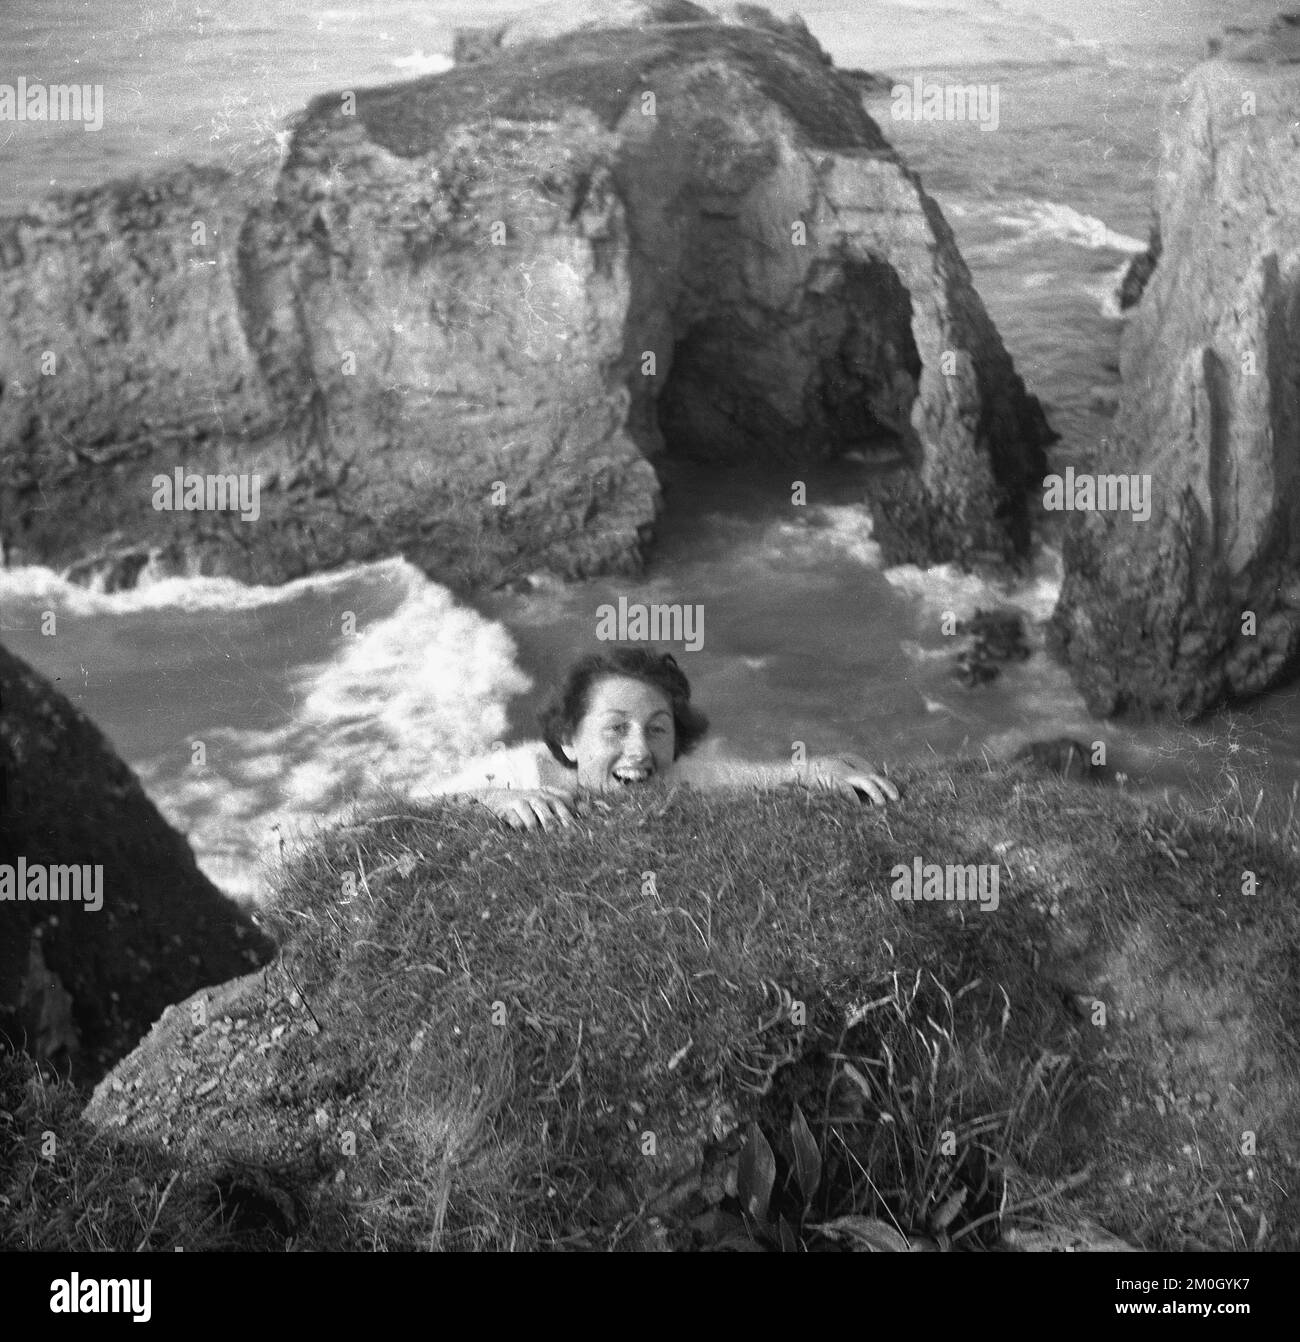 1950s, histórico, en la costa, sobre el océano, mirando hacia abajo al mar y las rocas que sobresalen, una señora debajo de la tierra, fingiendo tal vez que ella se está aferrando a la cara del acantilado o voladizo, Inglaterra, Reino Unido. Foto de stock